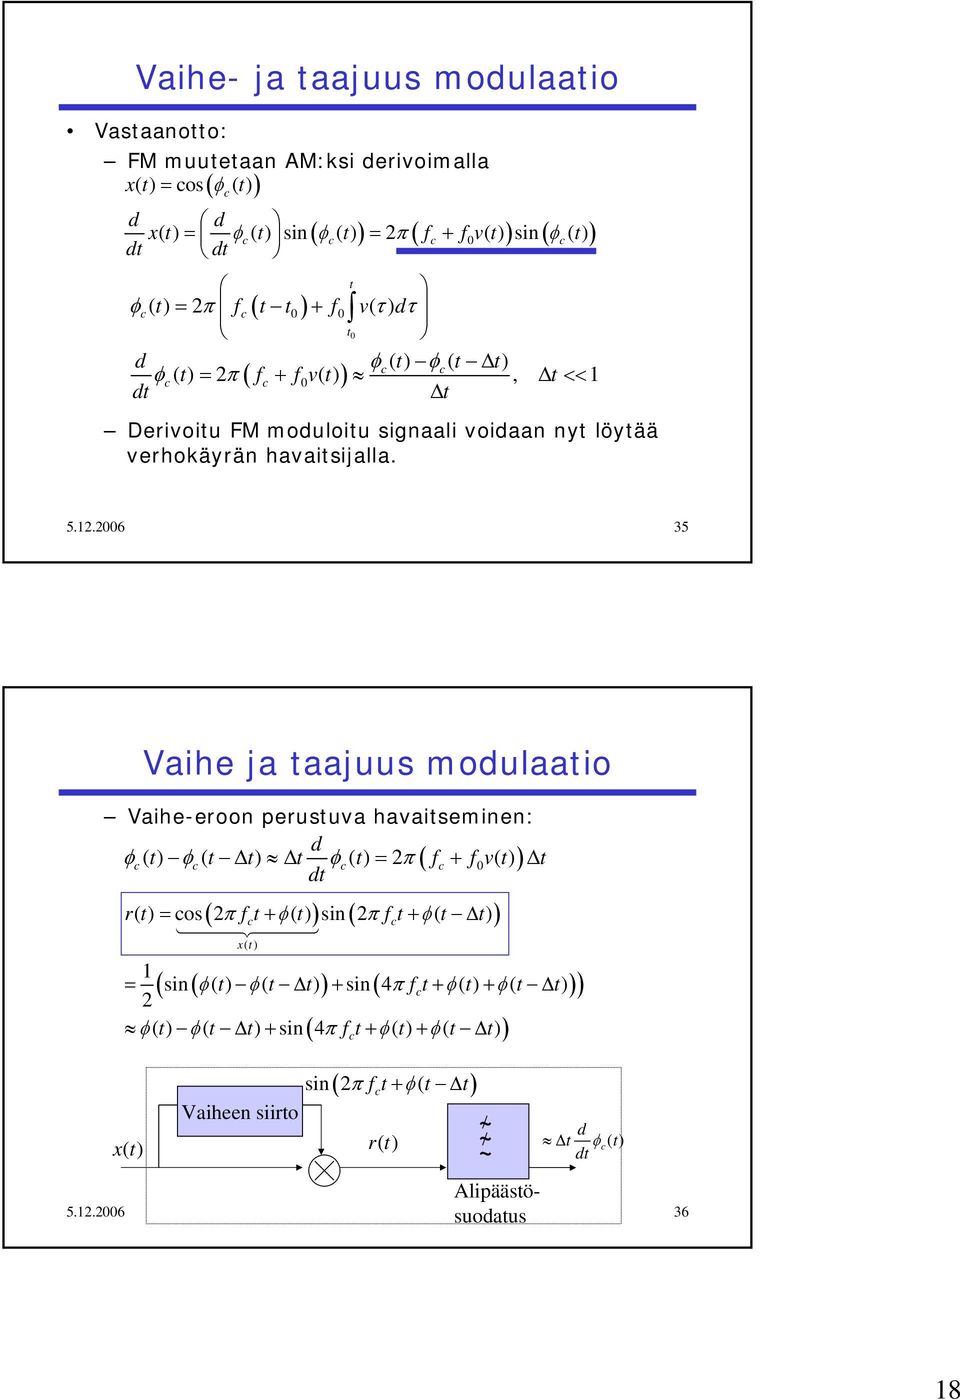 .6 35 Vaihe ja aajuus modulaaio Vaihe-eroon perusuva havaiseminen: d φ() φ( Δ) Δ φ() = π ( f + fv() ) Δ d ( π φ ) ( π φ ) r () = os f + () sin f + ( Δ) x ()